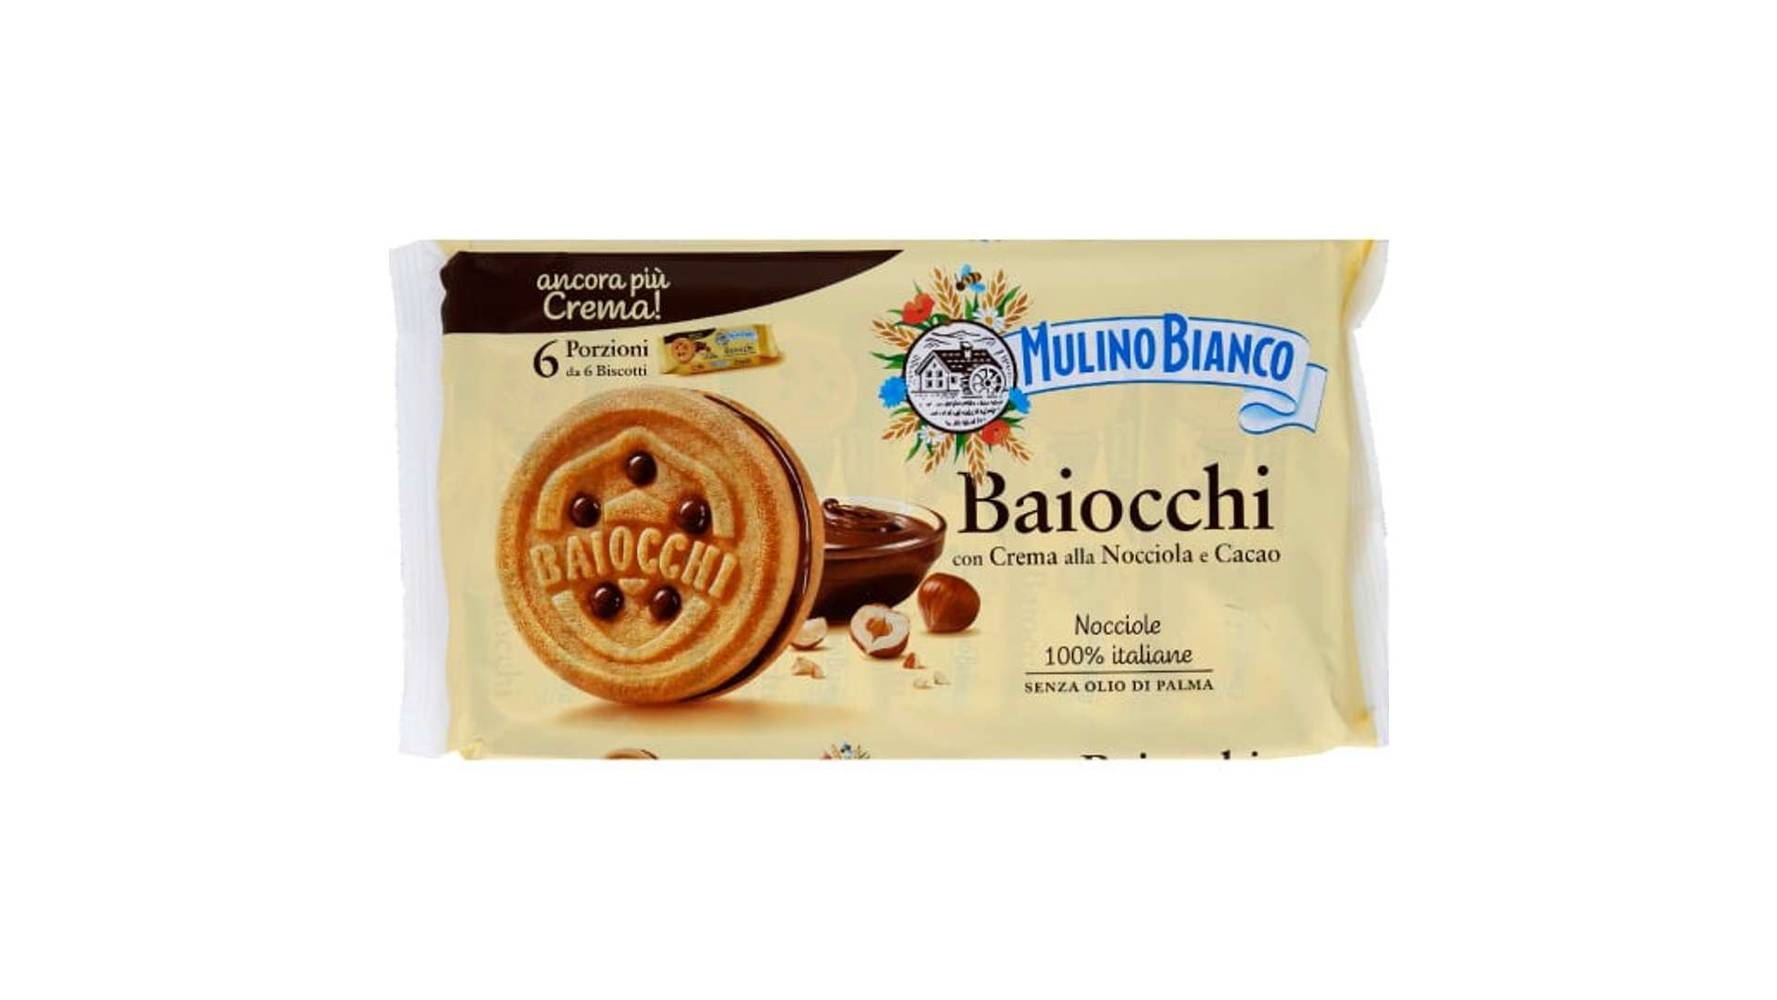 Mulino Bianco Baiocchi, biscuits fourrés à la crème aux noisettes et cacao Les 6 sachets de 6, 336g